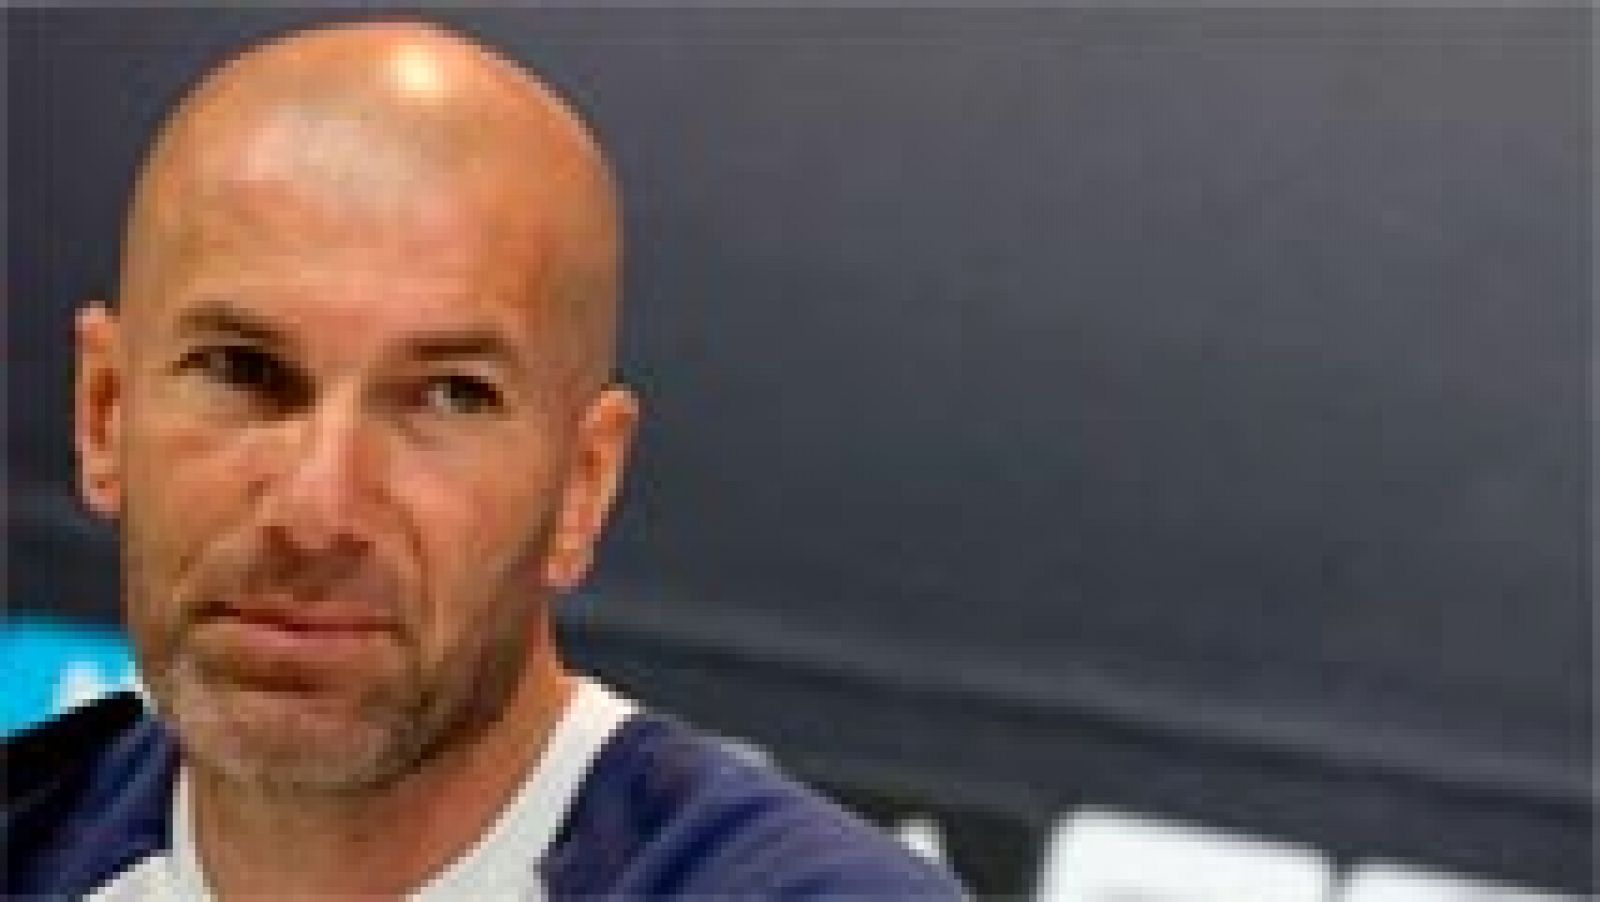 Zidane: "Da igual el dibujo, lo que importa es la actitud y la abnegacion"